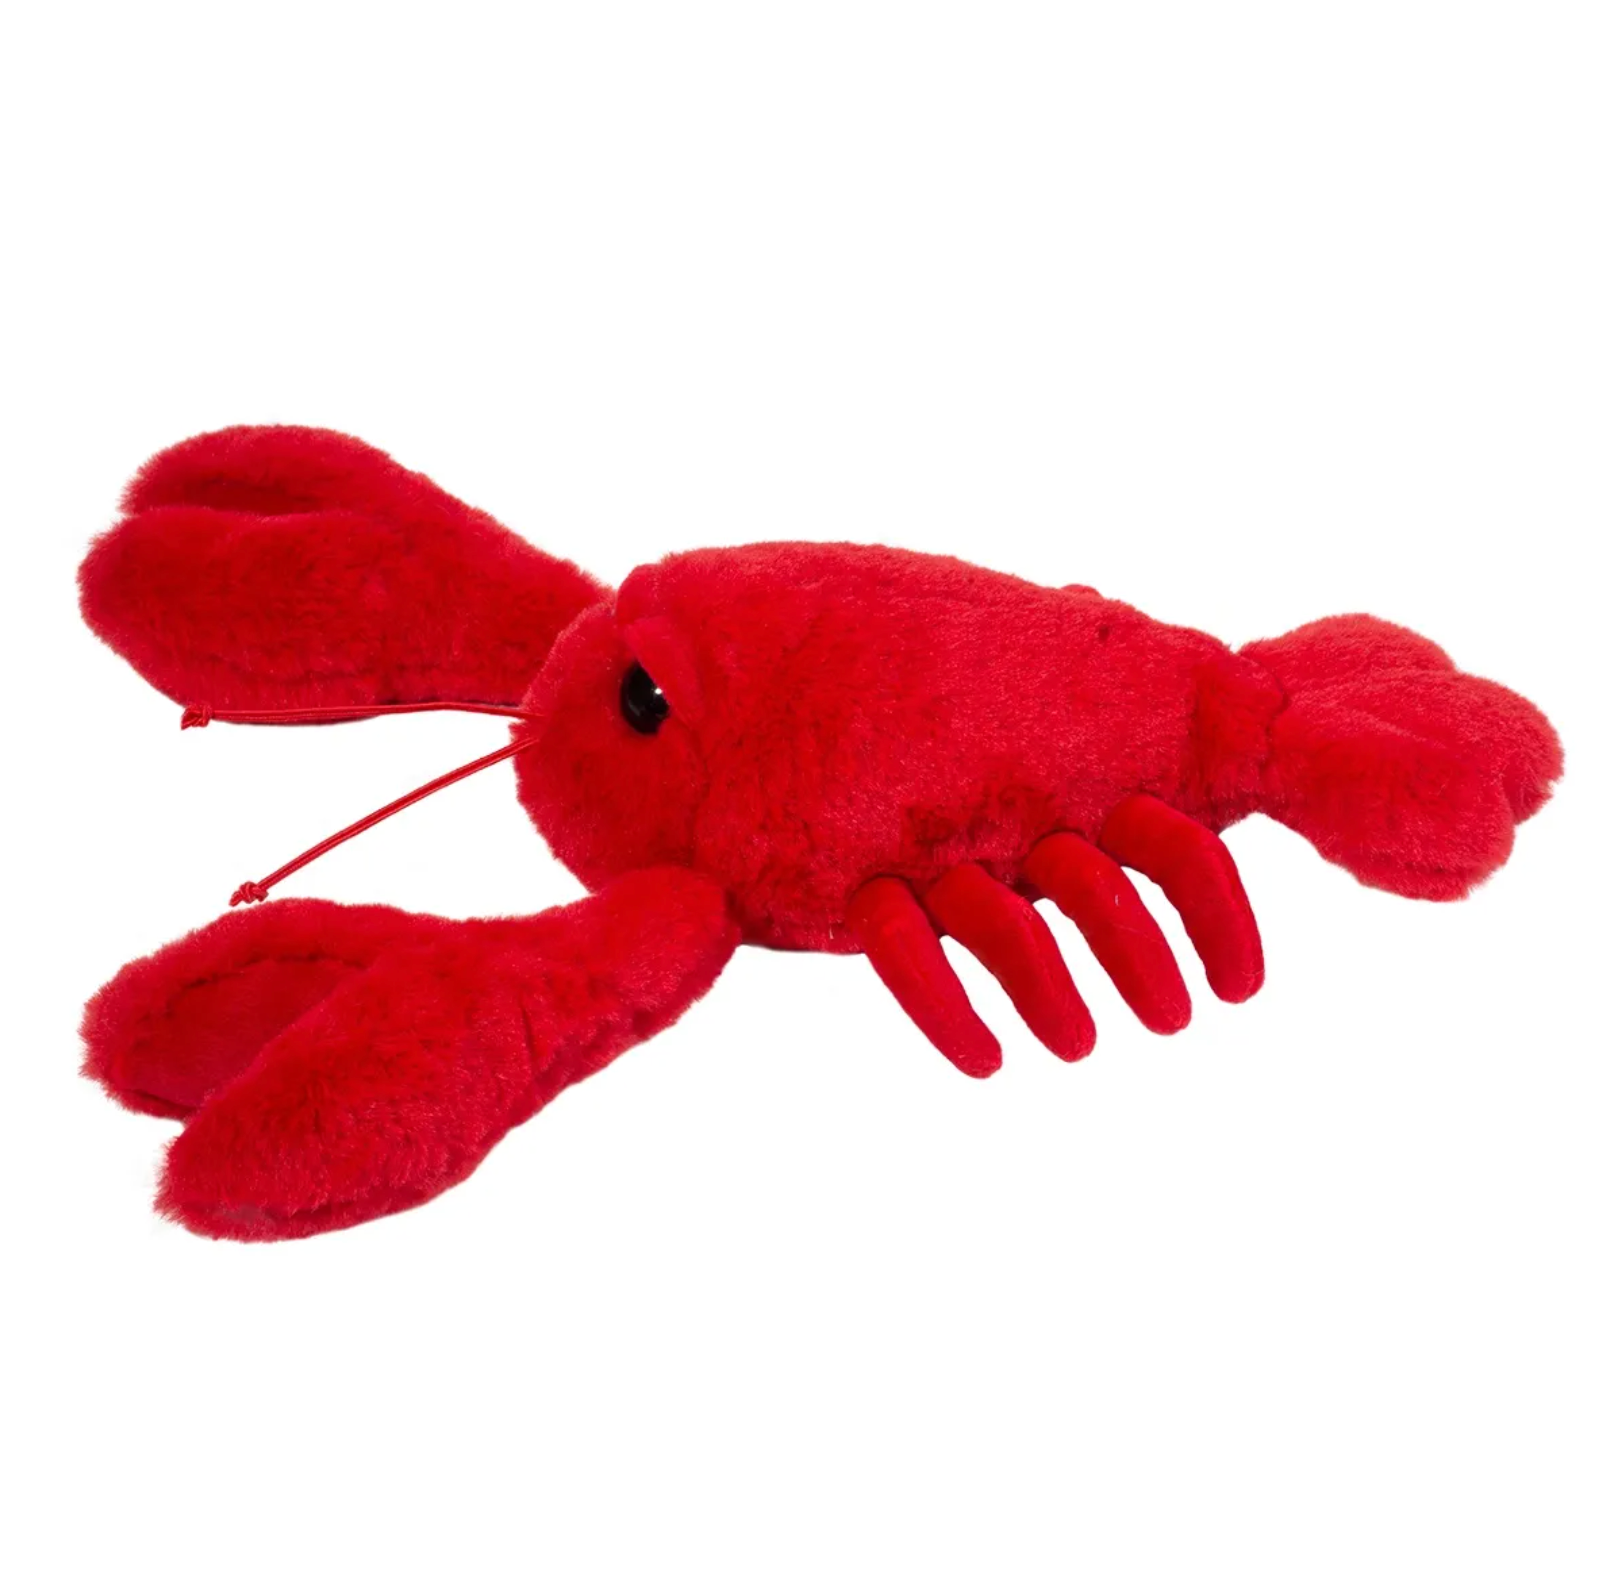 Douglas Clawson Lobster